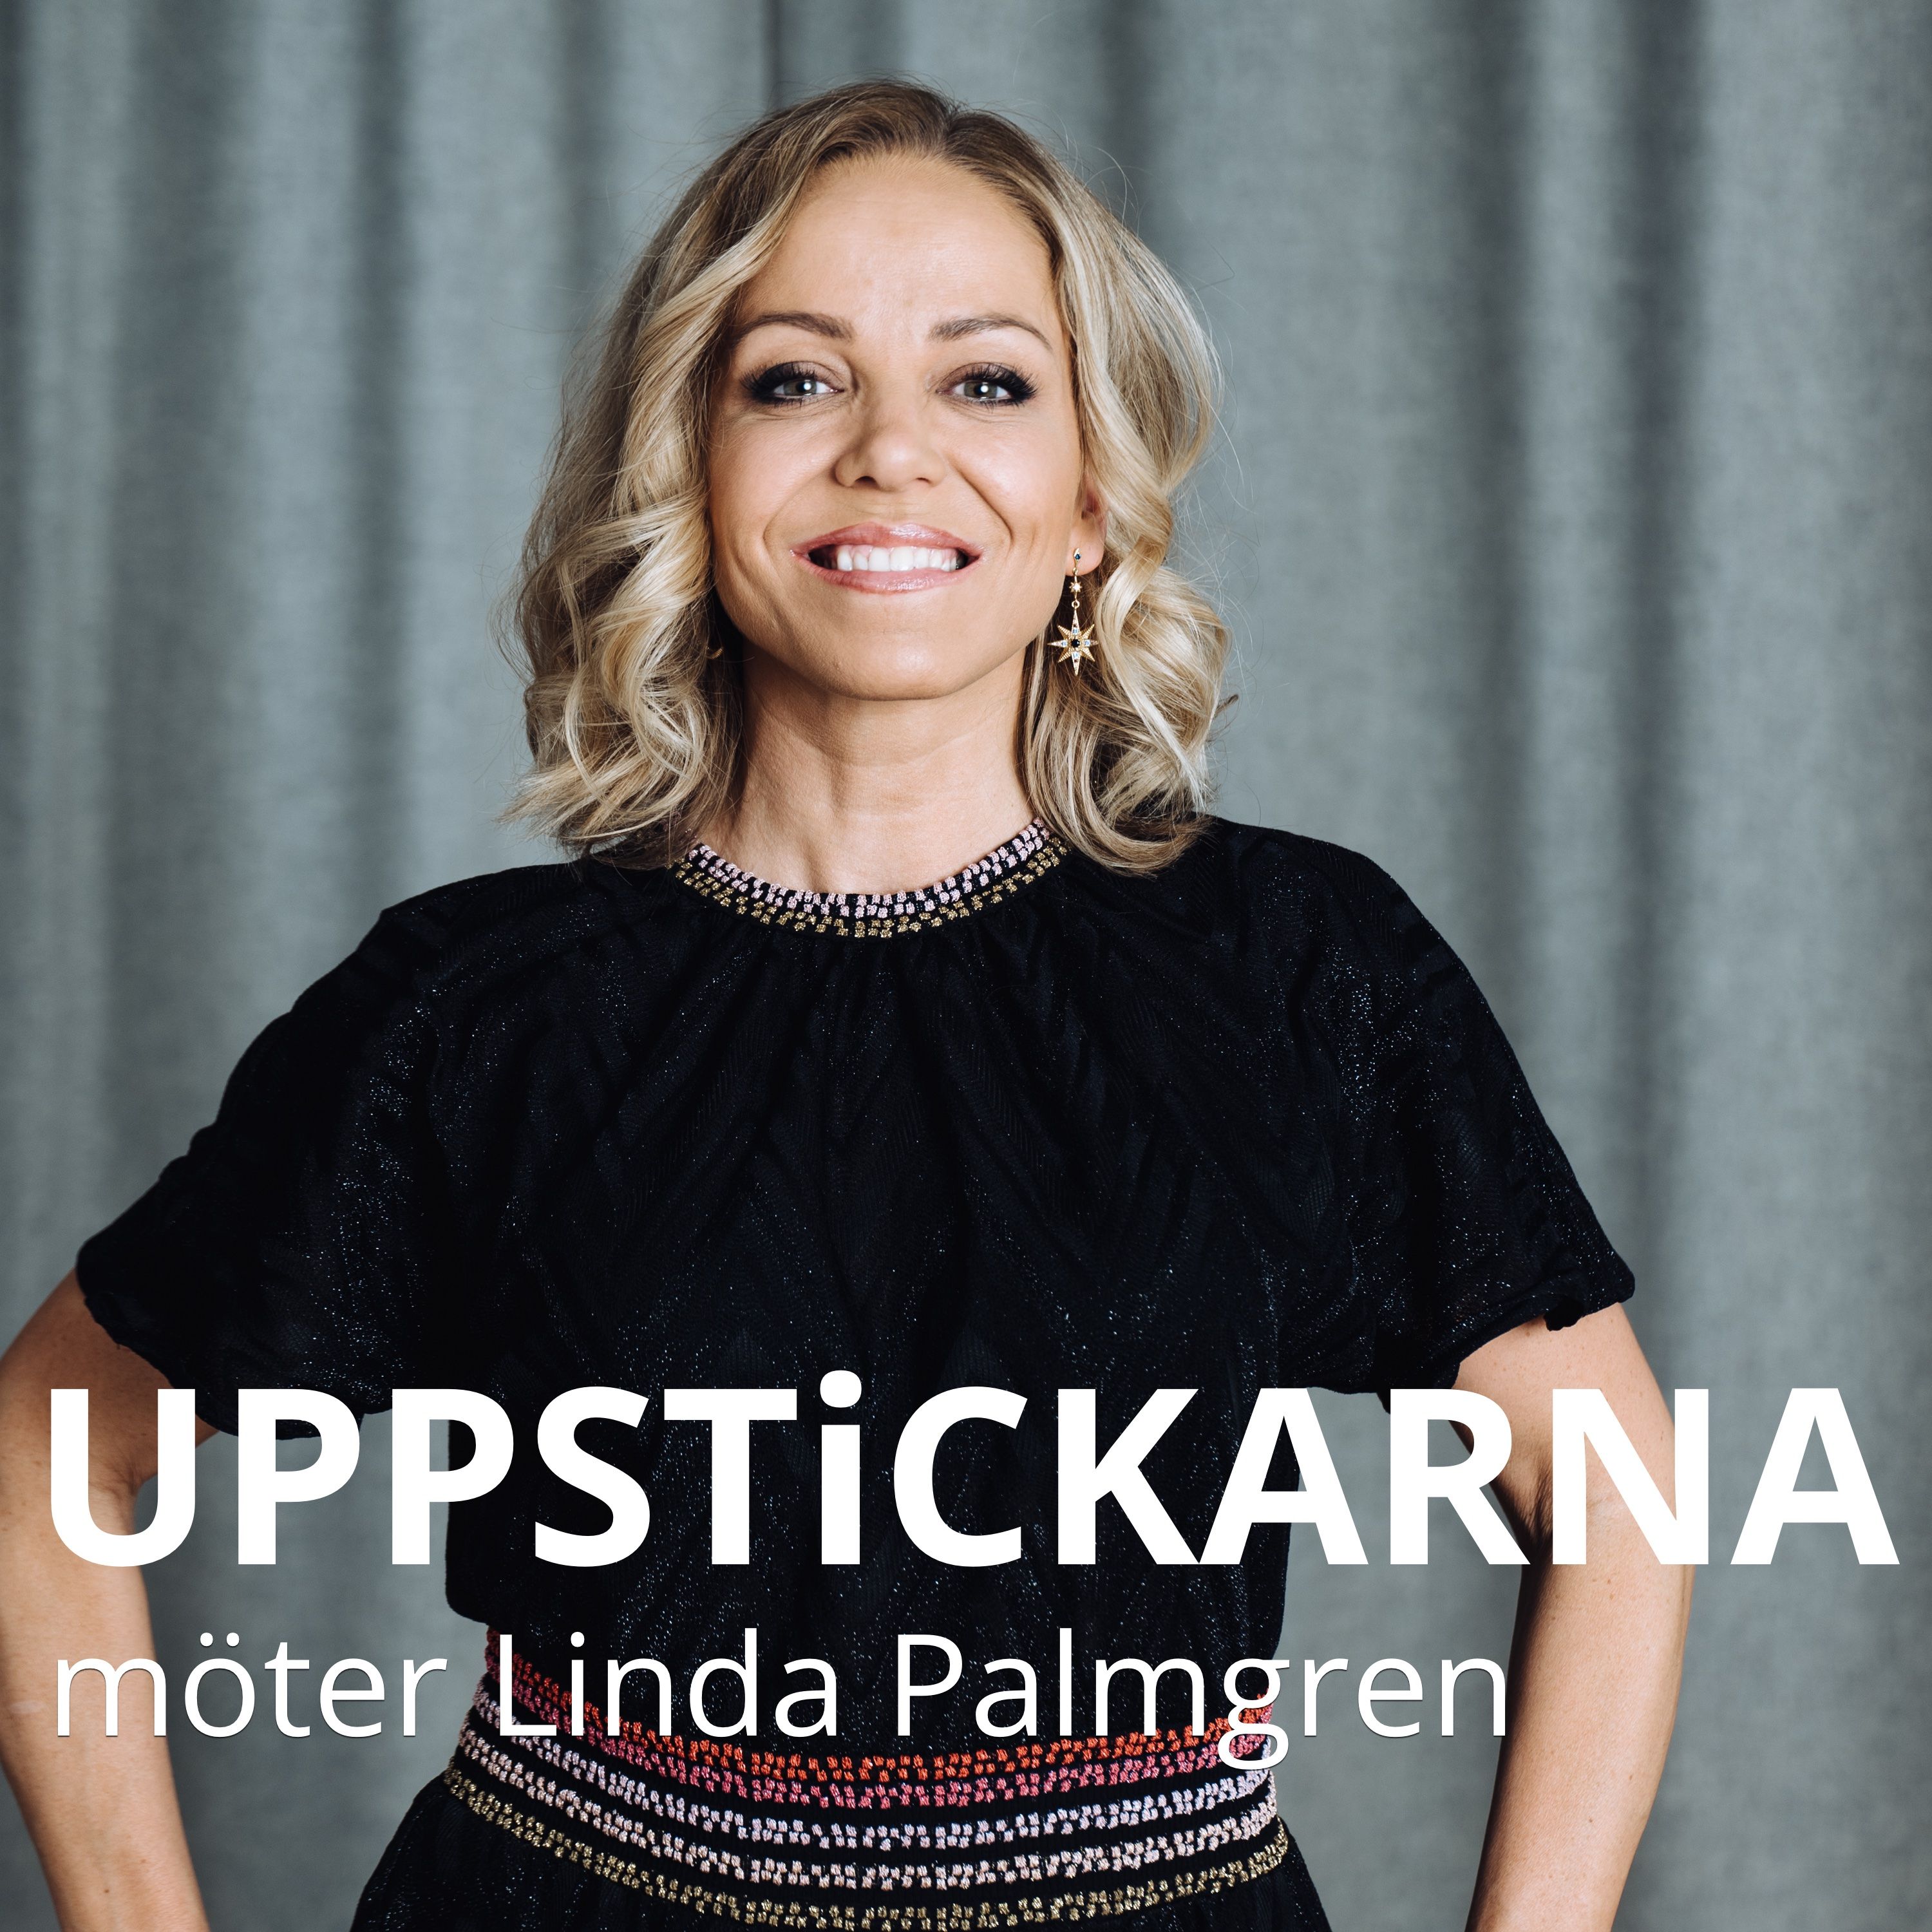 Uppstickarna möter Linda Palmgren